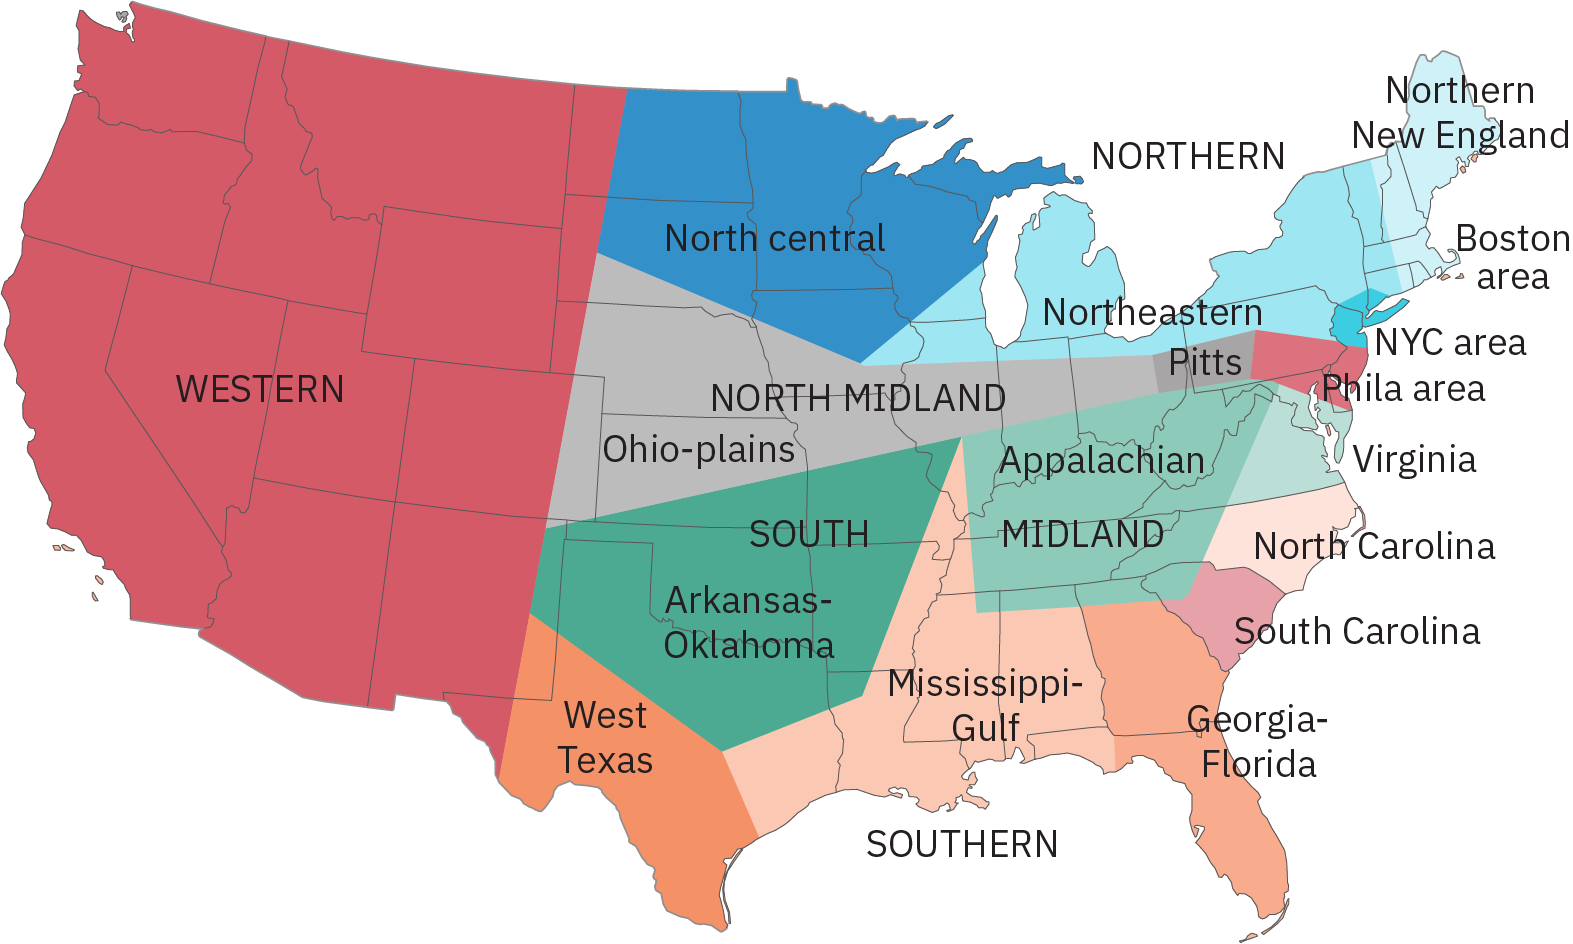 مخطط تفصيلي للولايات المتحدة مع تحديد مناطق مختلفة وتظليلها وتمييزها بلهجة كلامية. ومن الأمثلة على ذلك: «الشمالية»، التي تشمل كل من نيو إنجلاند وميشيغان ونيويورك وبعض مناطق بنسلفانيا وأوهايو؛ و «جورجيا-فلوريدا»، التي تضم كل فلوريدا وكل جورجيا تقريبًا؛ و «الغربية» التي تمتد إلى الساحل الغربي من خط يبدأ تقريبًا بحدود نيو مكسيكو بـ تكساس وتمتد شمالًا.